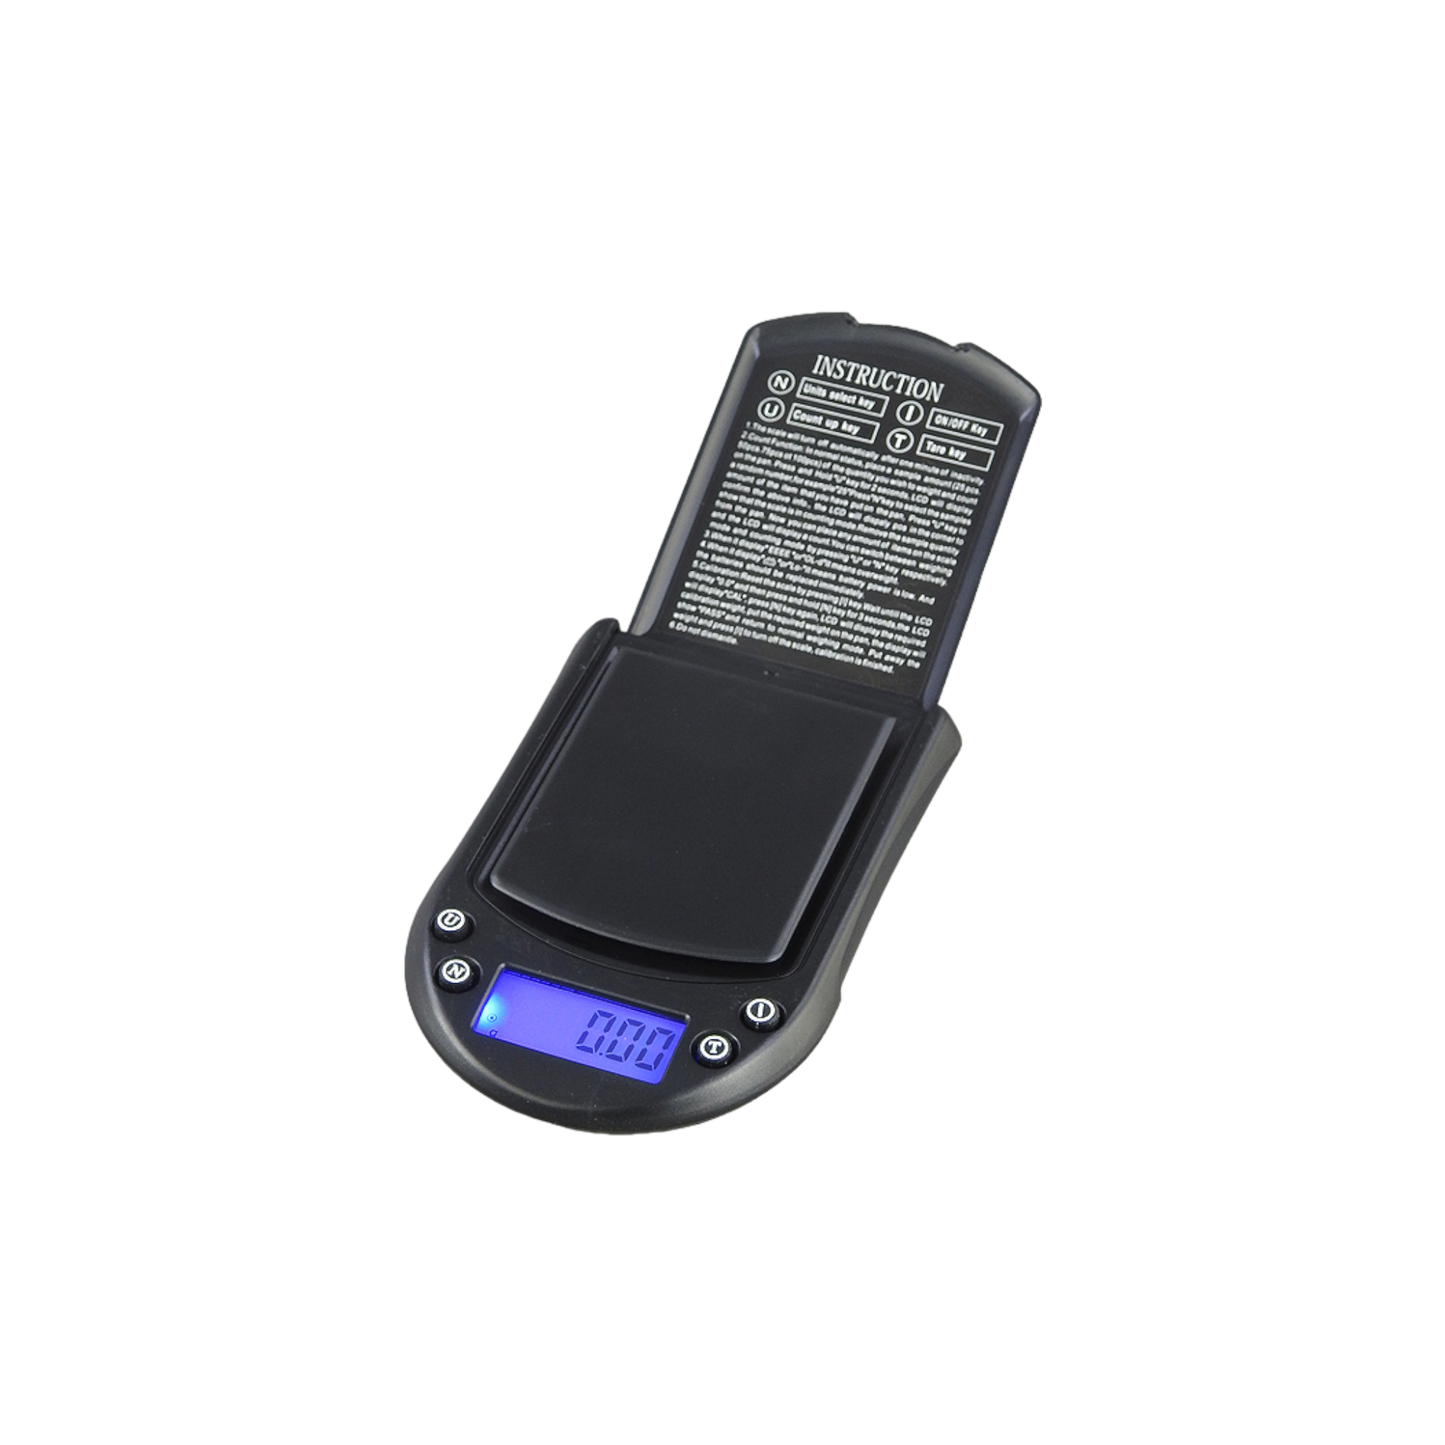 Digitalwaage 200g/0,01g, Einsteigermodell DS-10